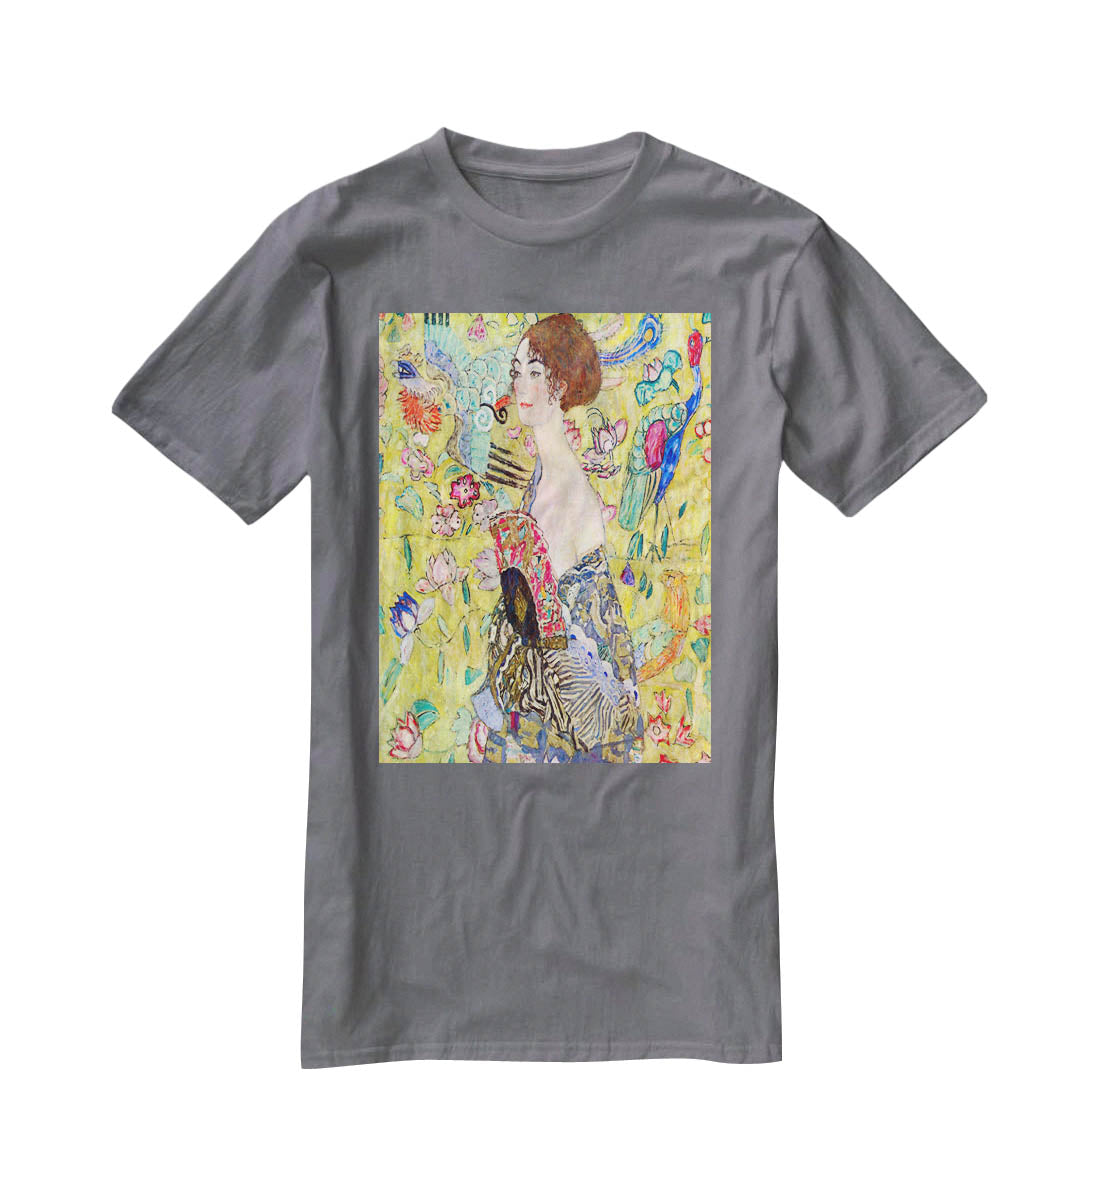 Lady with fan by Klimt T-Shirt - Canvas Art Rocks - 3